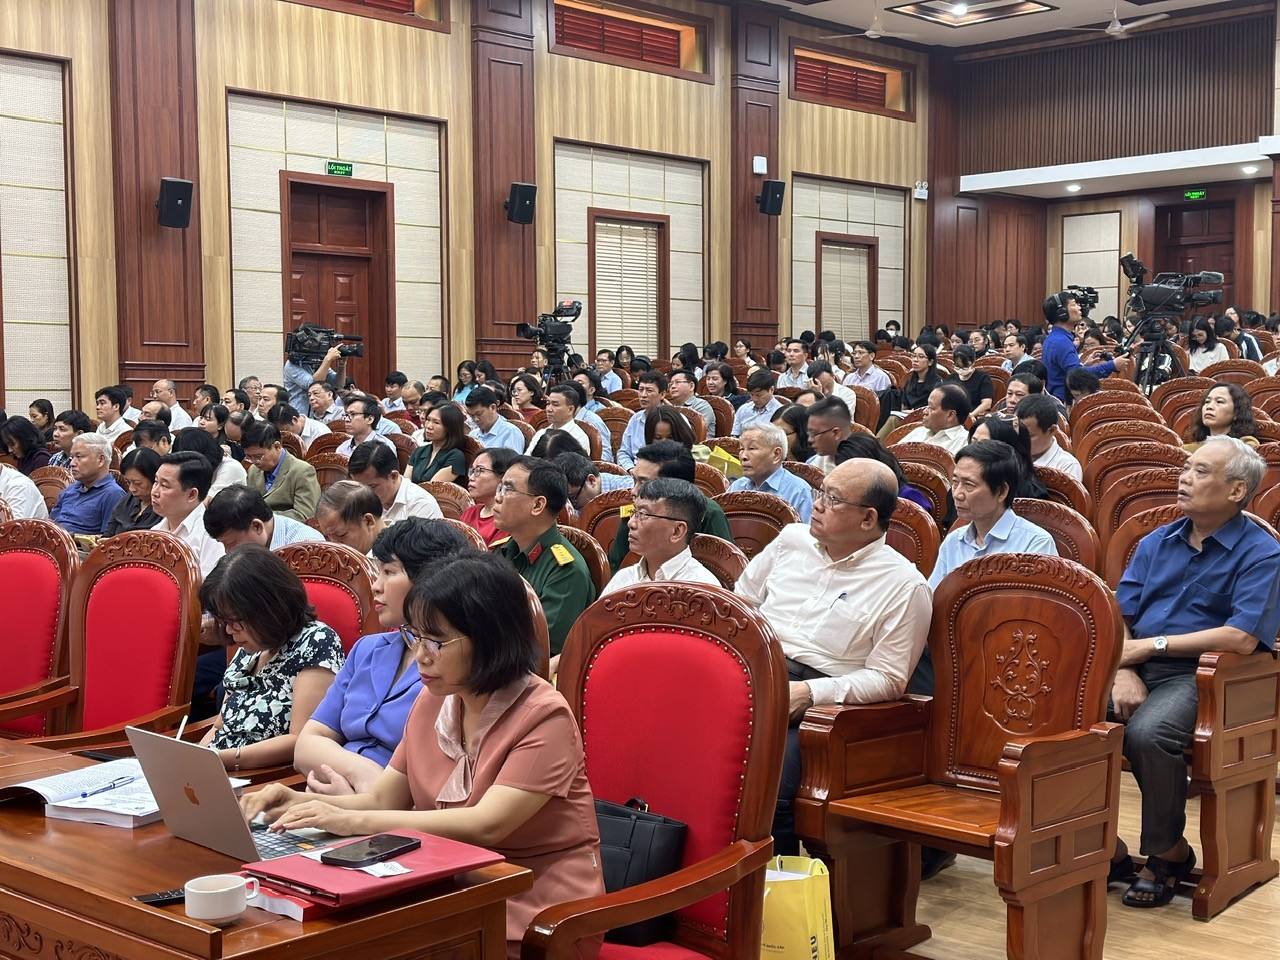 Hà Nội: Tổ chức Hội thảo khoa học Quy hoạch Thủ đô